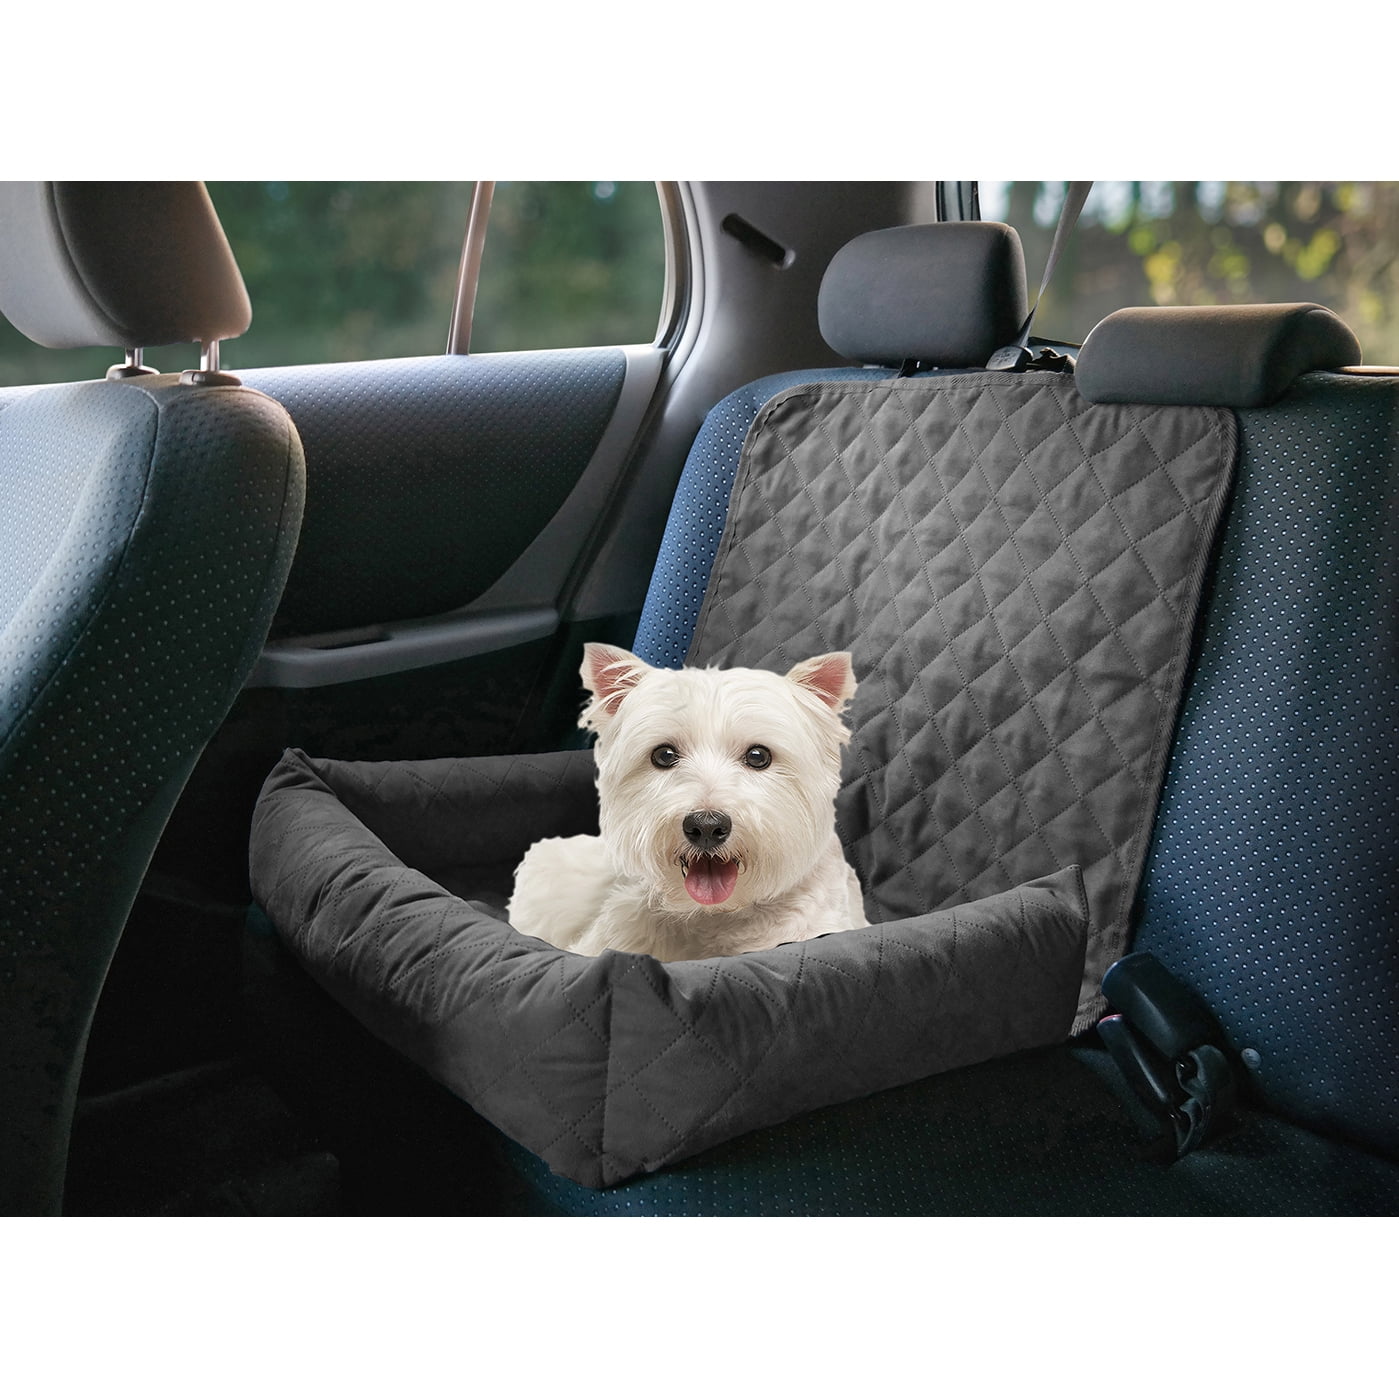 DHDHWL,Housse de siège pour Imperméable Voiture Mat Puppy Seat Cover Tissu Oxford Cotton Dog Pet Chaise Avant Coussin Tapis Chat Sac de Transport Automatique 